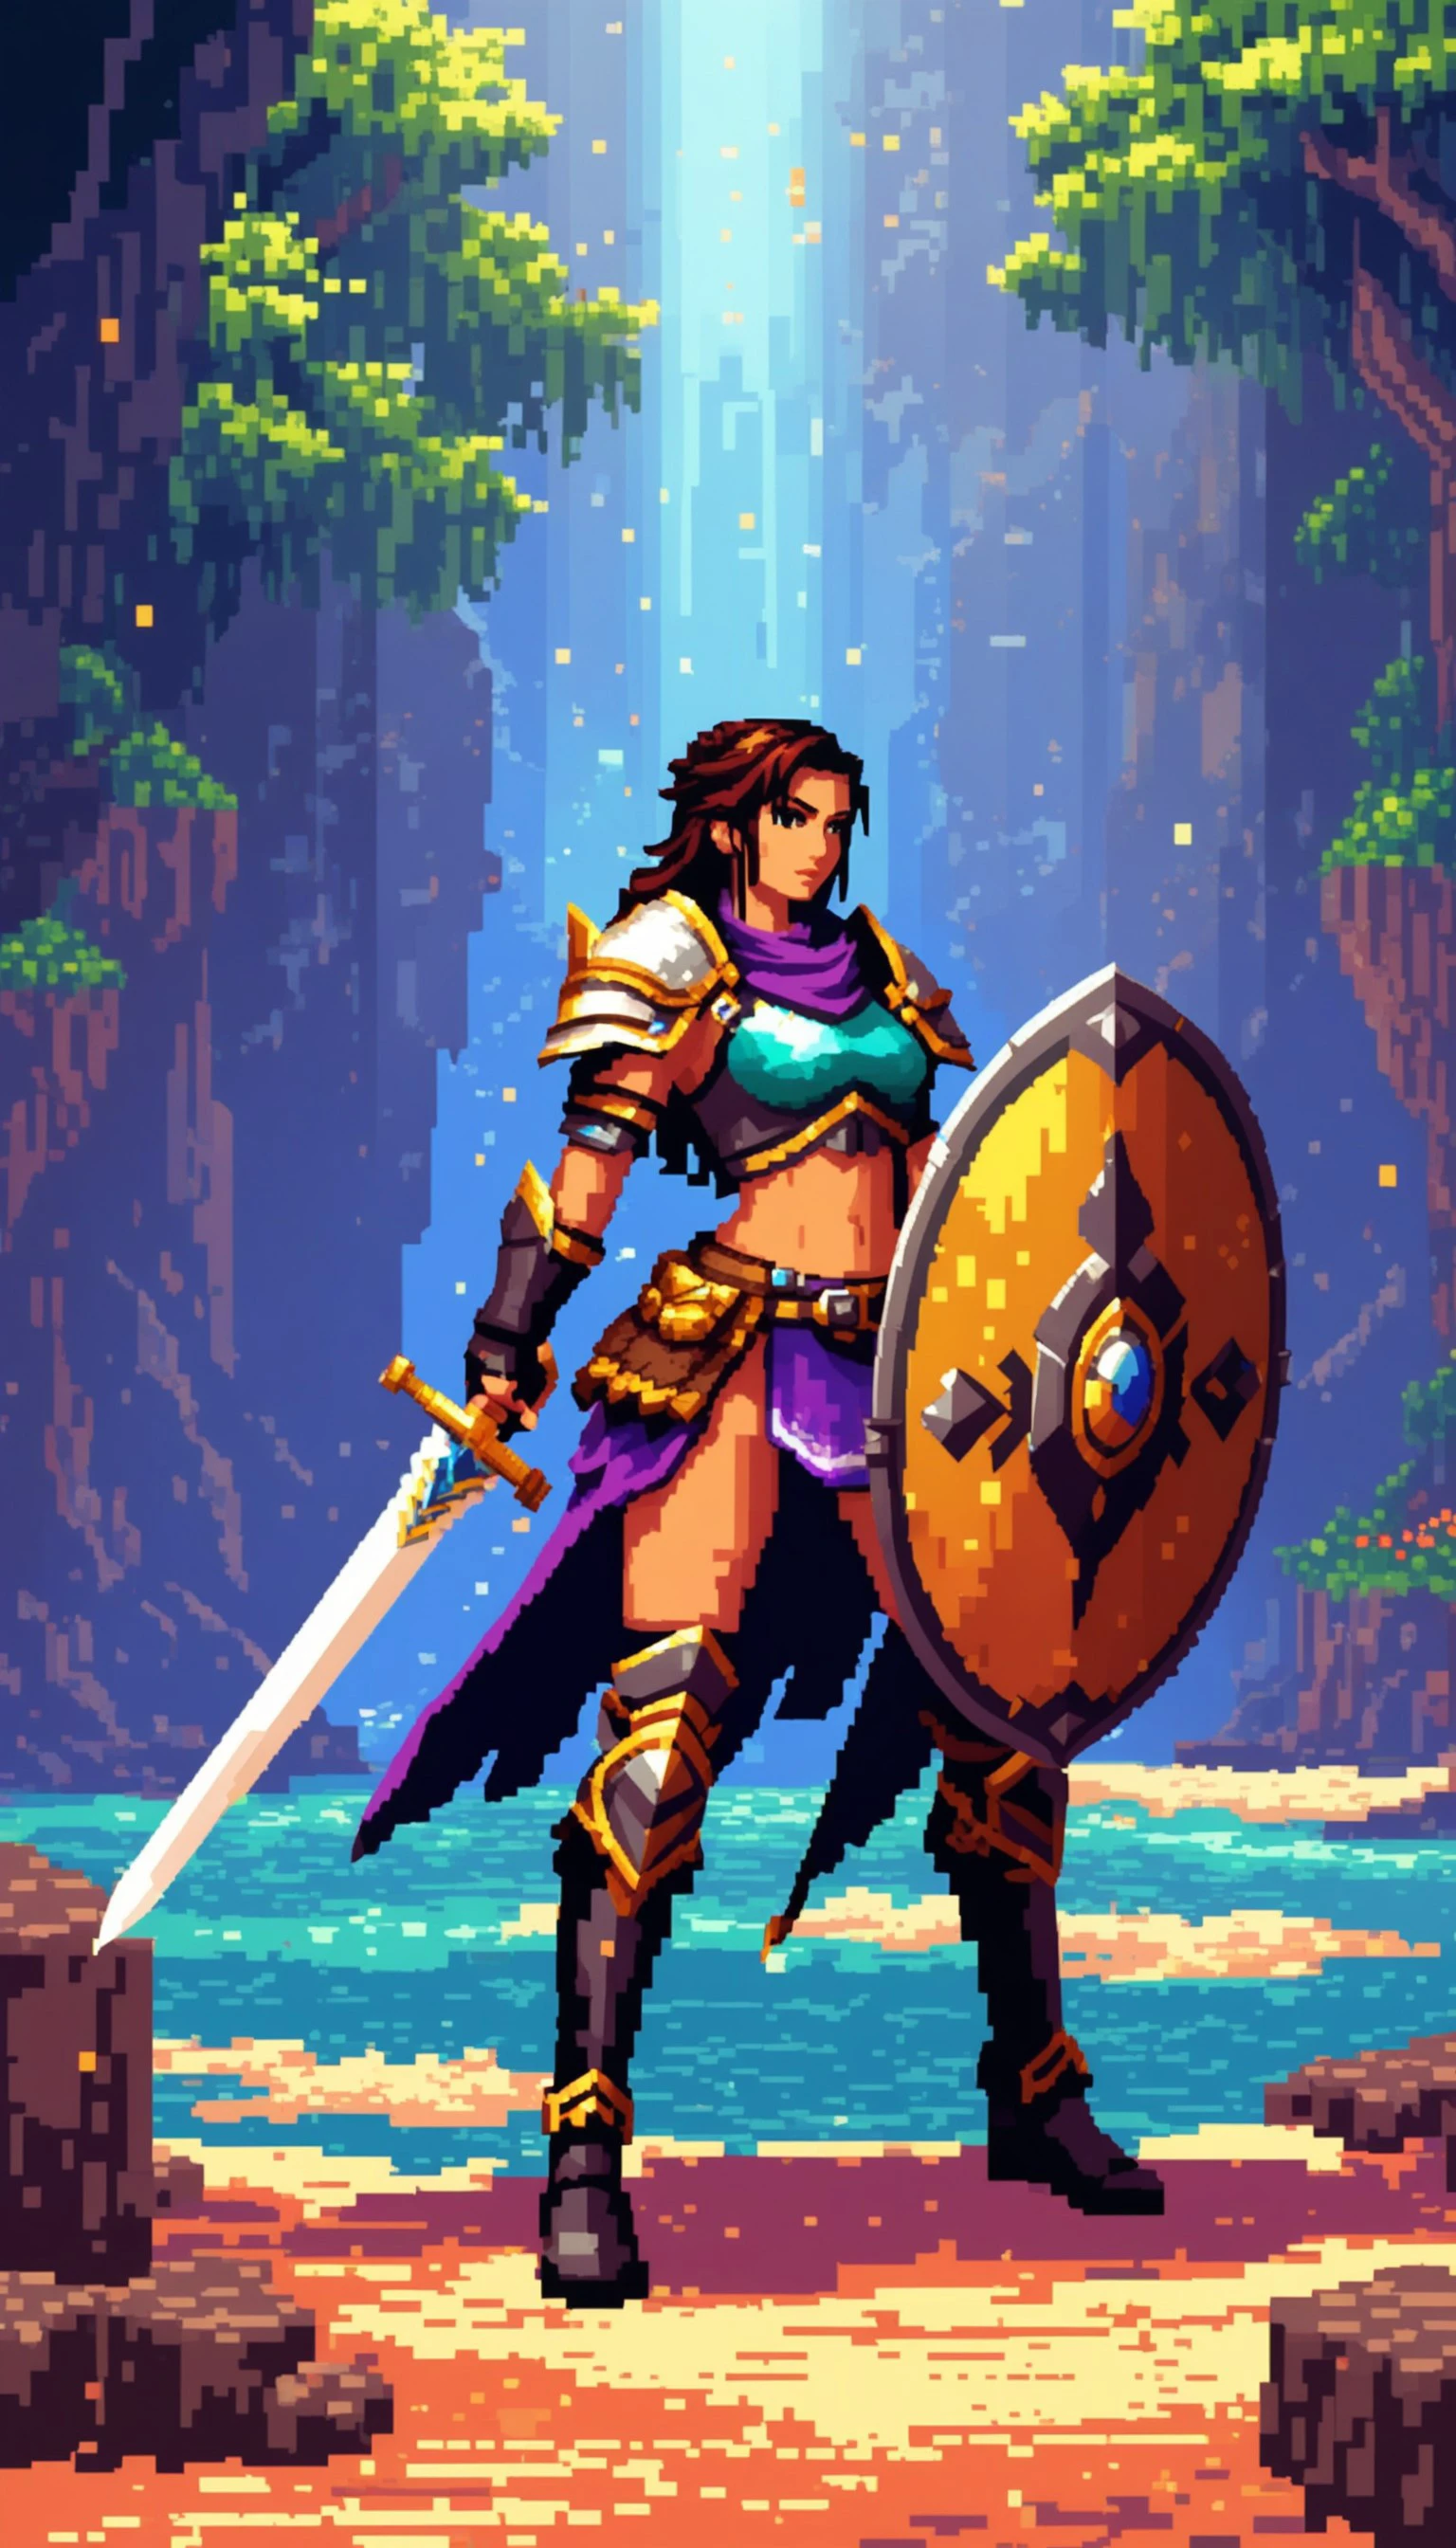 Pixelkunst einer wilden Kriegerin mit Schwert und Schild in einer Fantasy-Umgebung, mit lebendigen Farben, dynamische Beleuchtung, und ein dramatisches, epische Stimmung